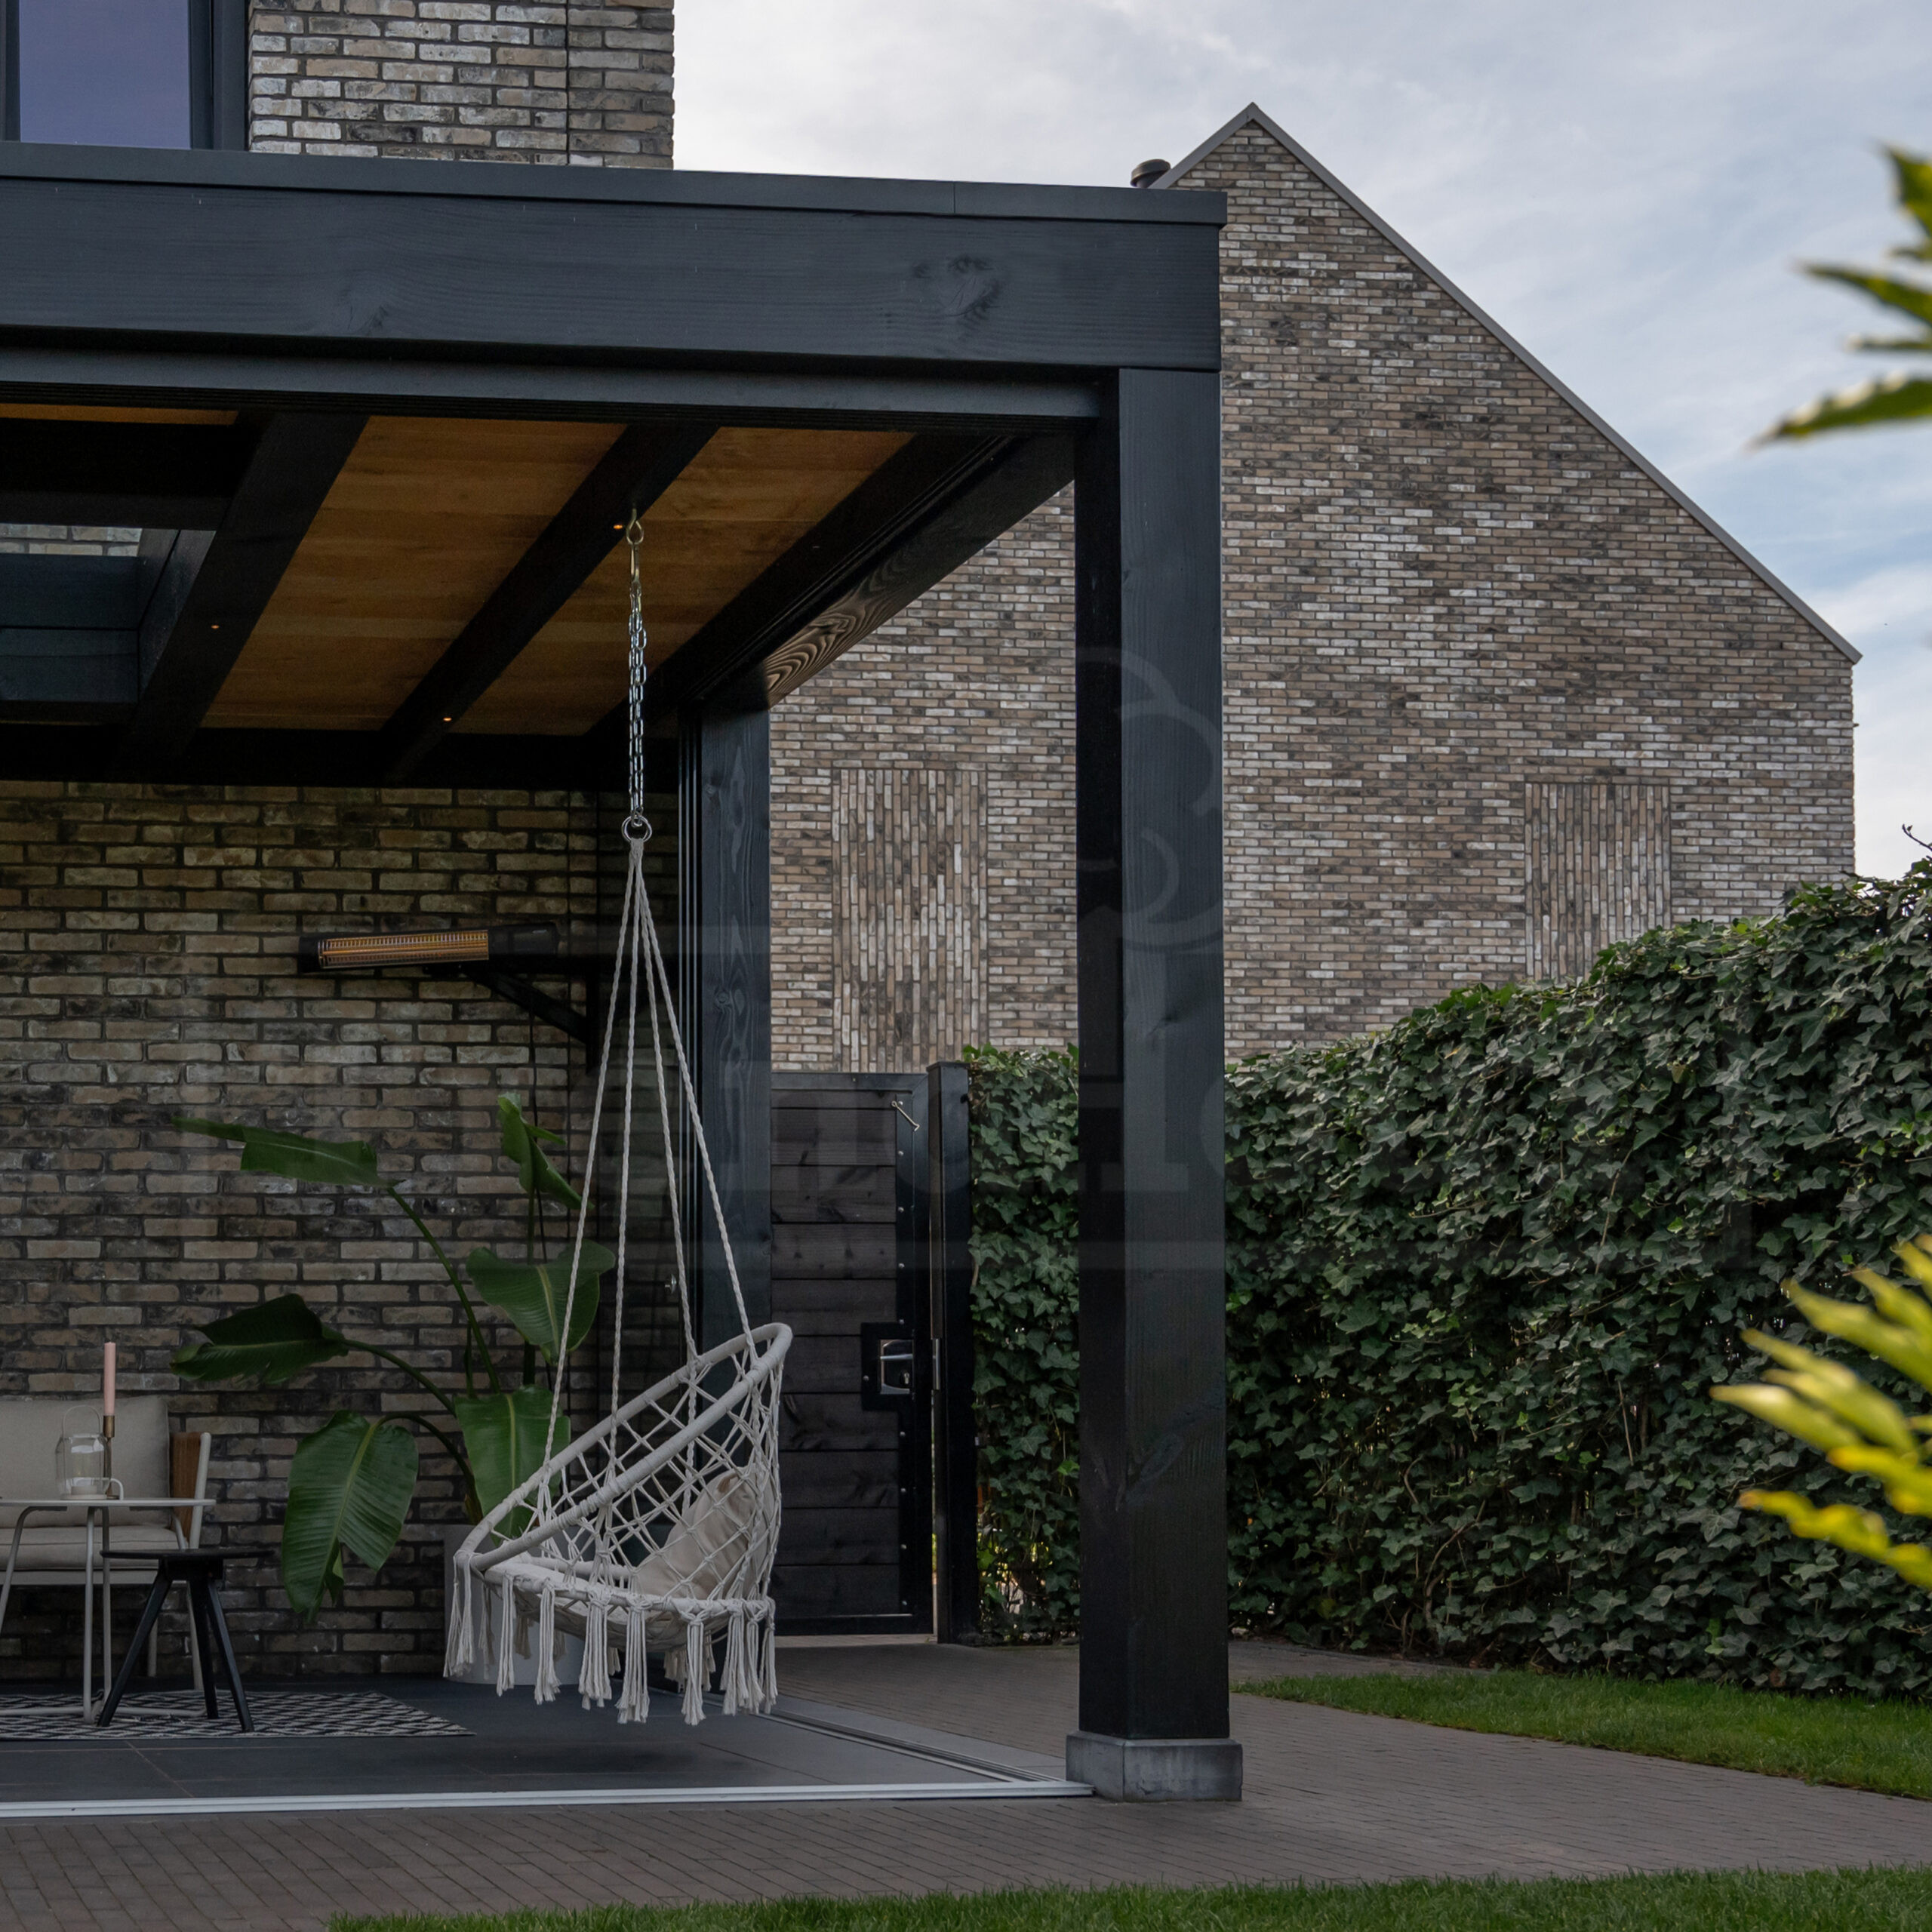 palermo-Xxl-in-kleur-zwart-gespoten-moderne-overkapping-met-lichtstraat-aan-huis-Trendhout-bouwpakket-w